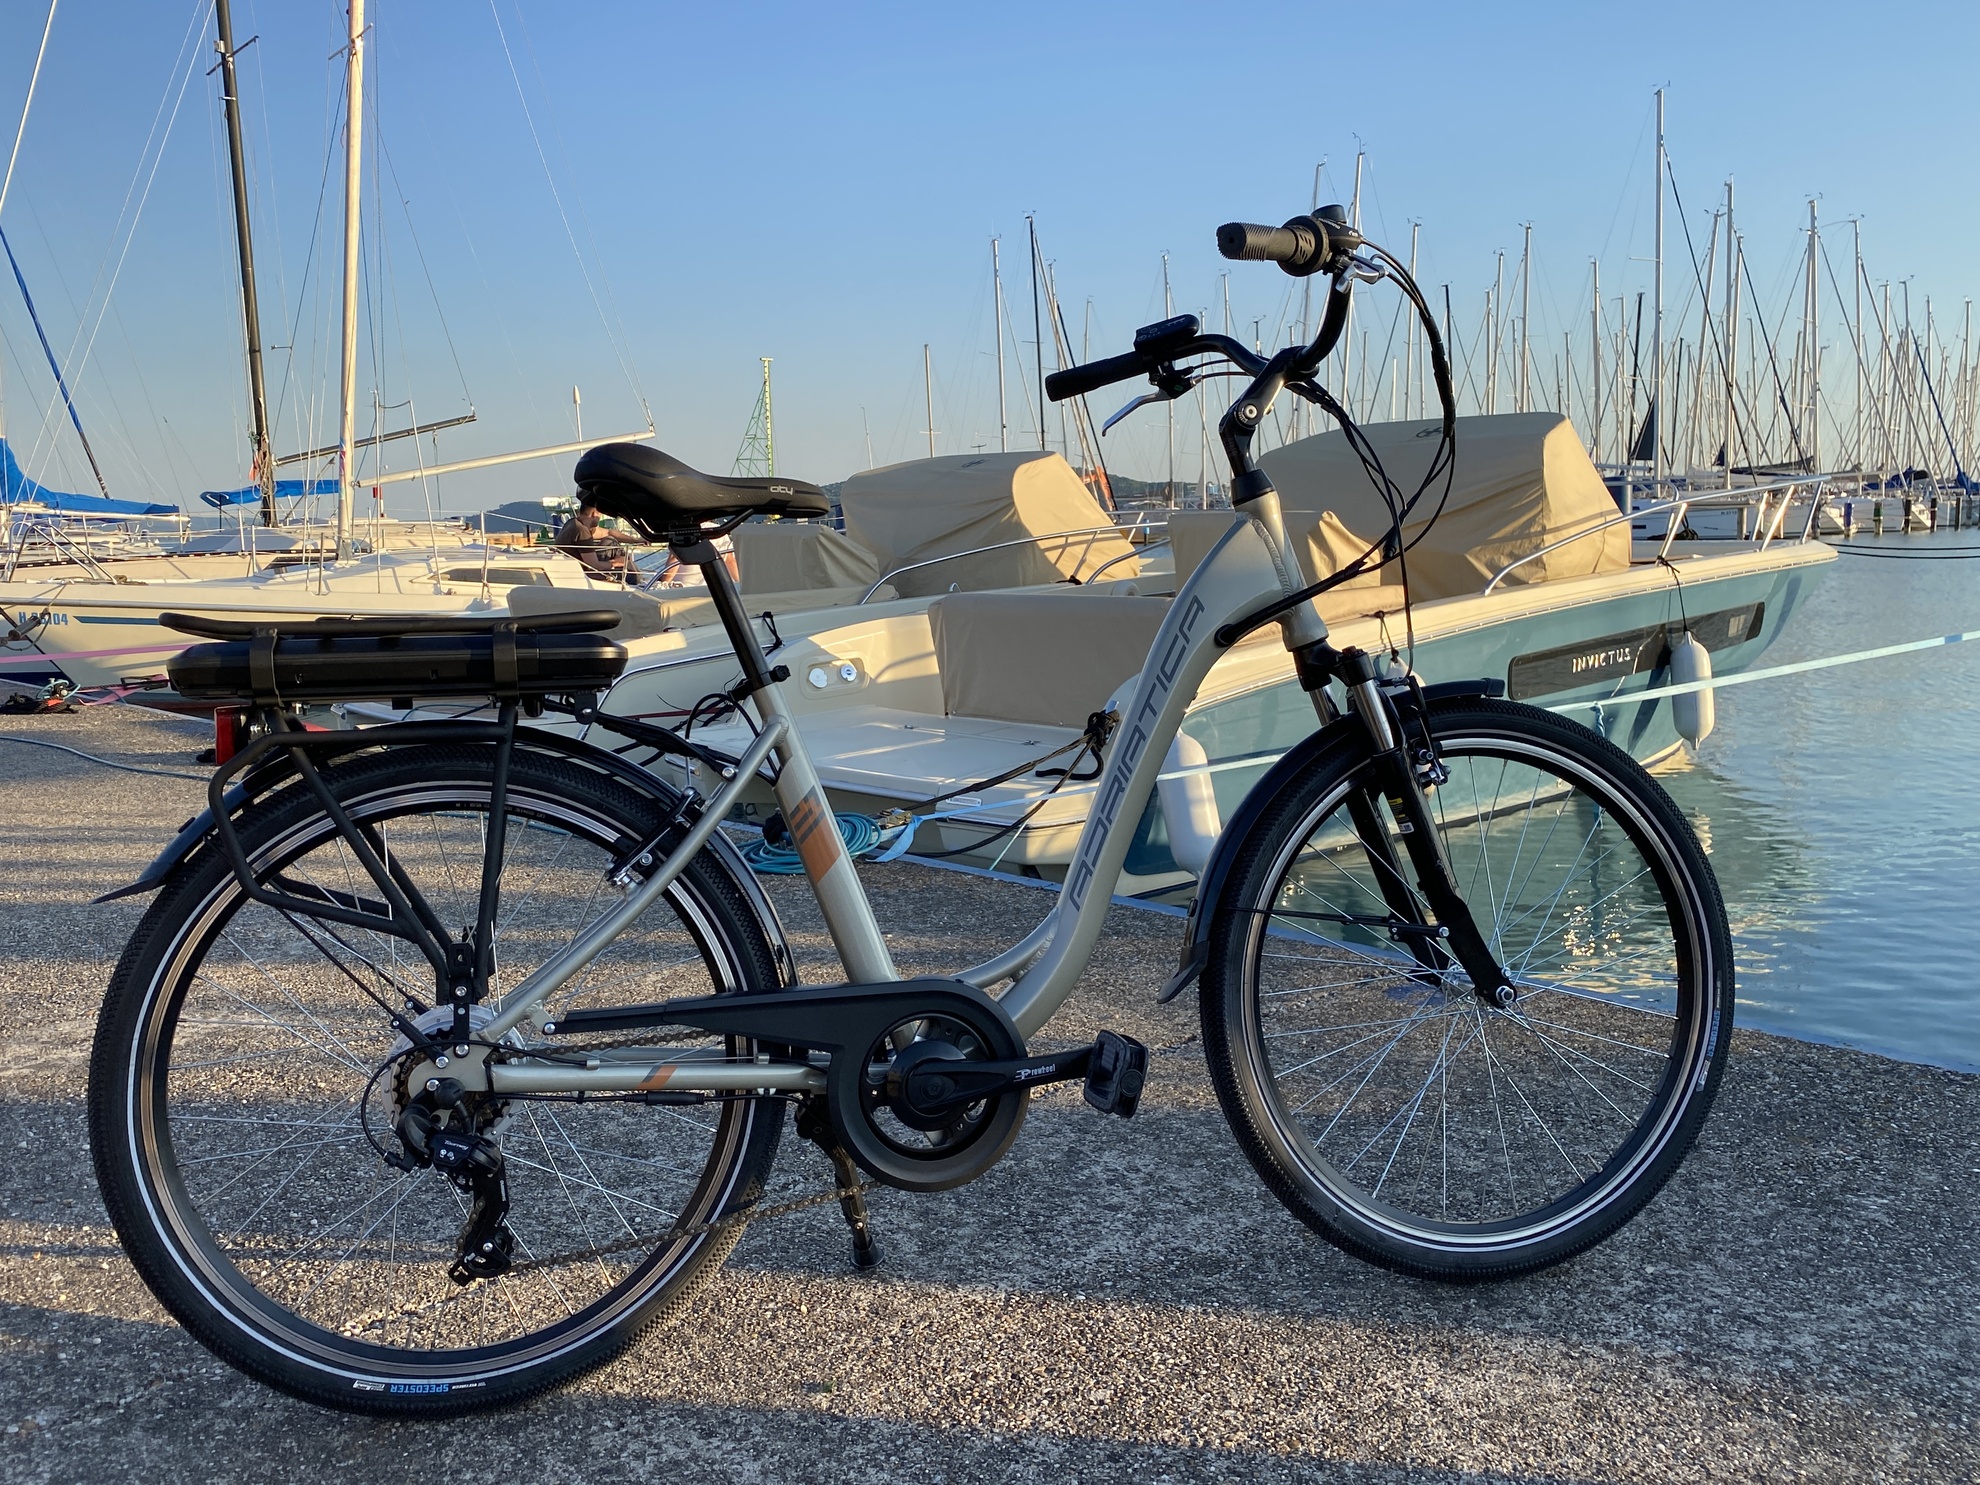 Ennyi valóban elég a boldogsághoz? Adriatica E1 elektromos kerékpár teszt-1